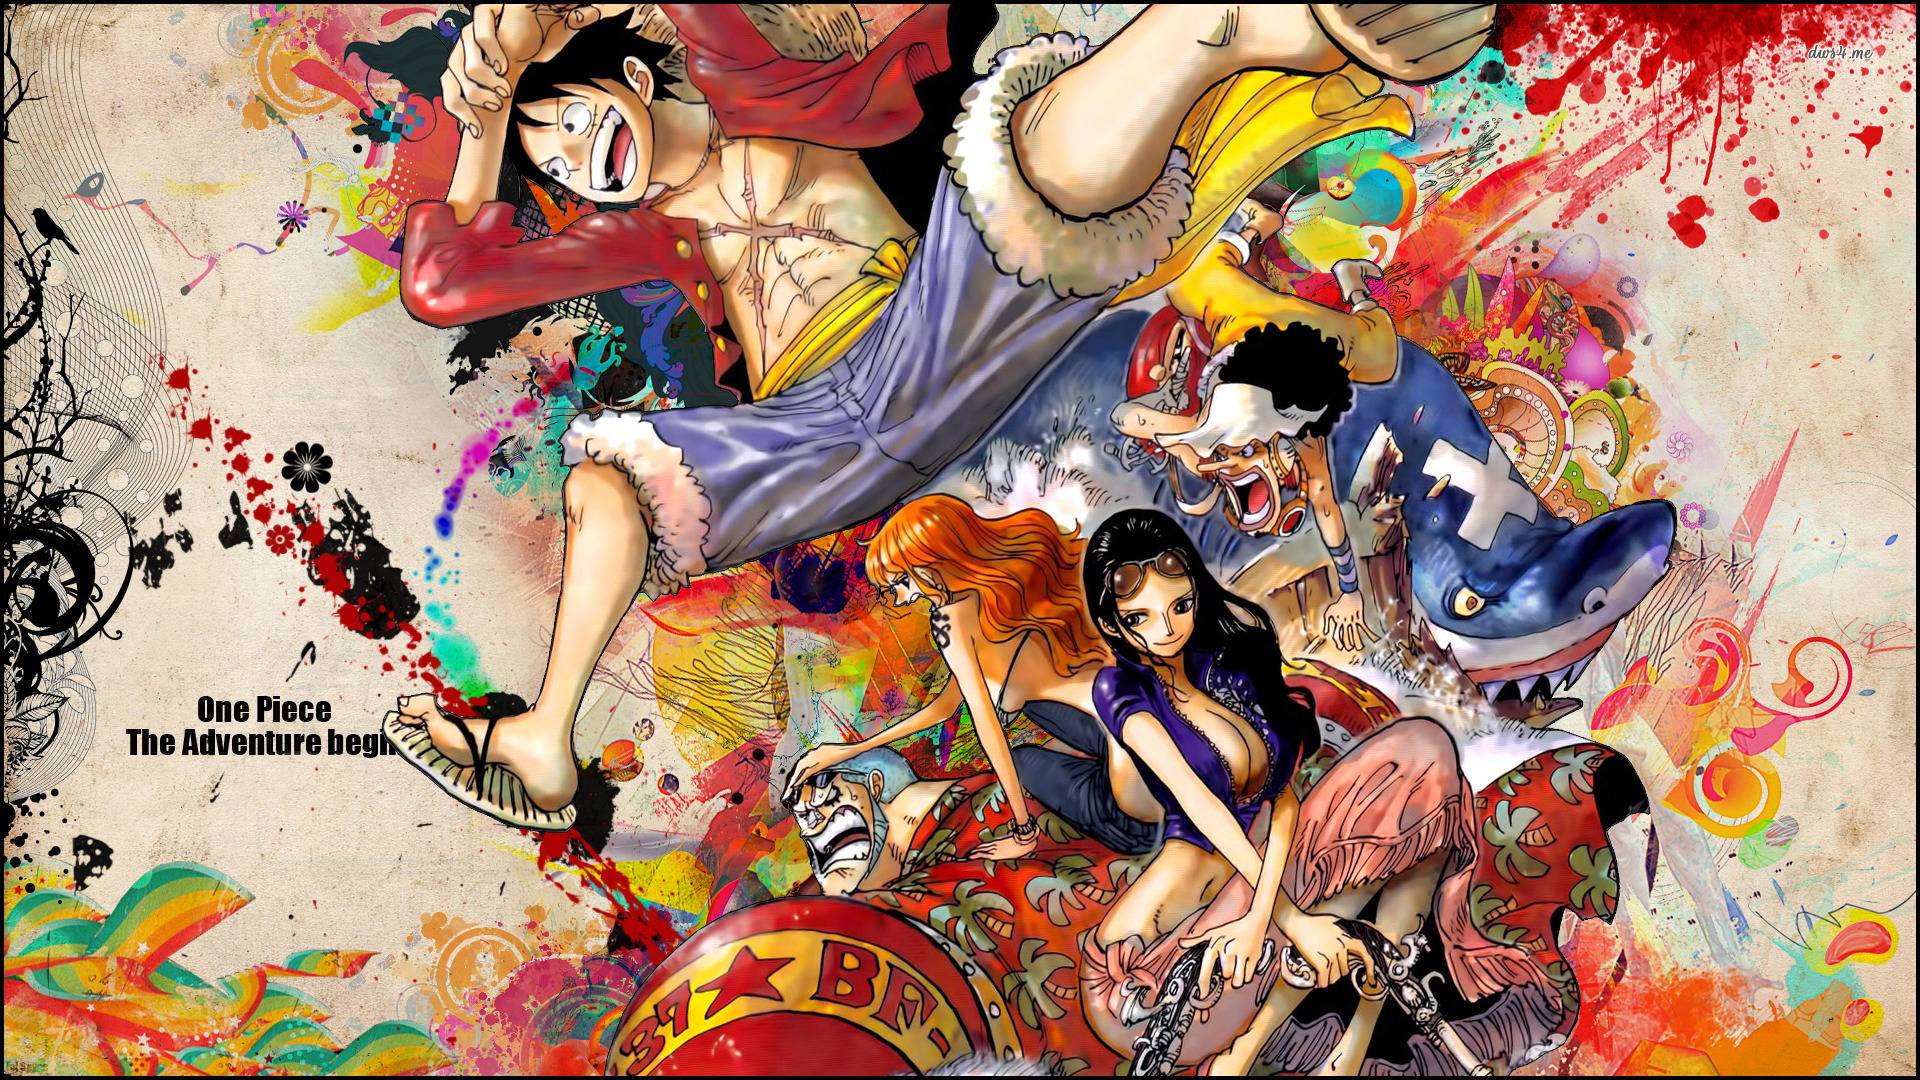 Hình nền Dressrosa của One Piece sẽ khiến bạn phải thốt lên vì độ đẹp. Với những hình ảnh về Dressrosa, bạn sẽ được khám phá một thế giới đầy màu sắc và đáng yêu của One Piece. Bạn sẽ thấy Luffy và các thành viên của nhóm Straw Hat với trang phục mới mẻ và đầy phong cách trên hình nền này.